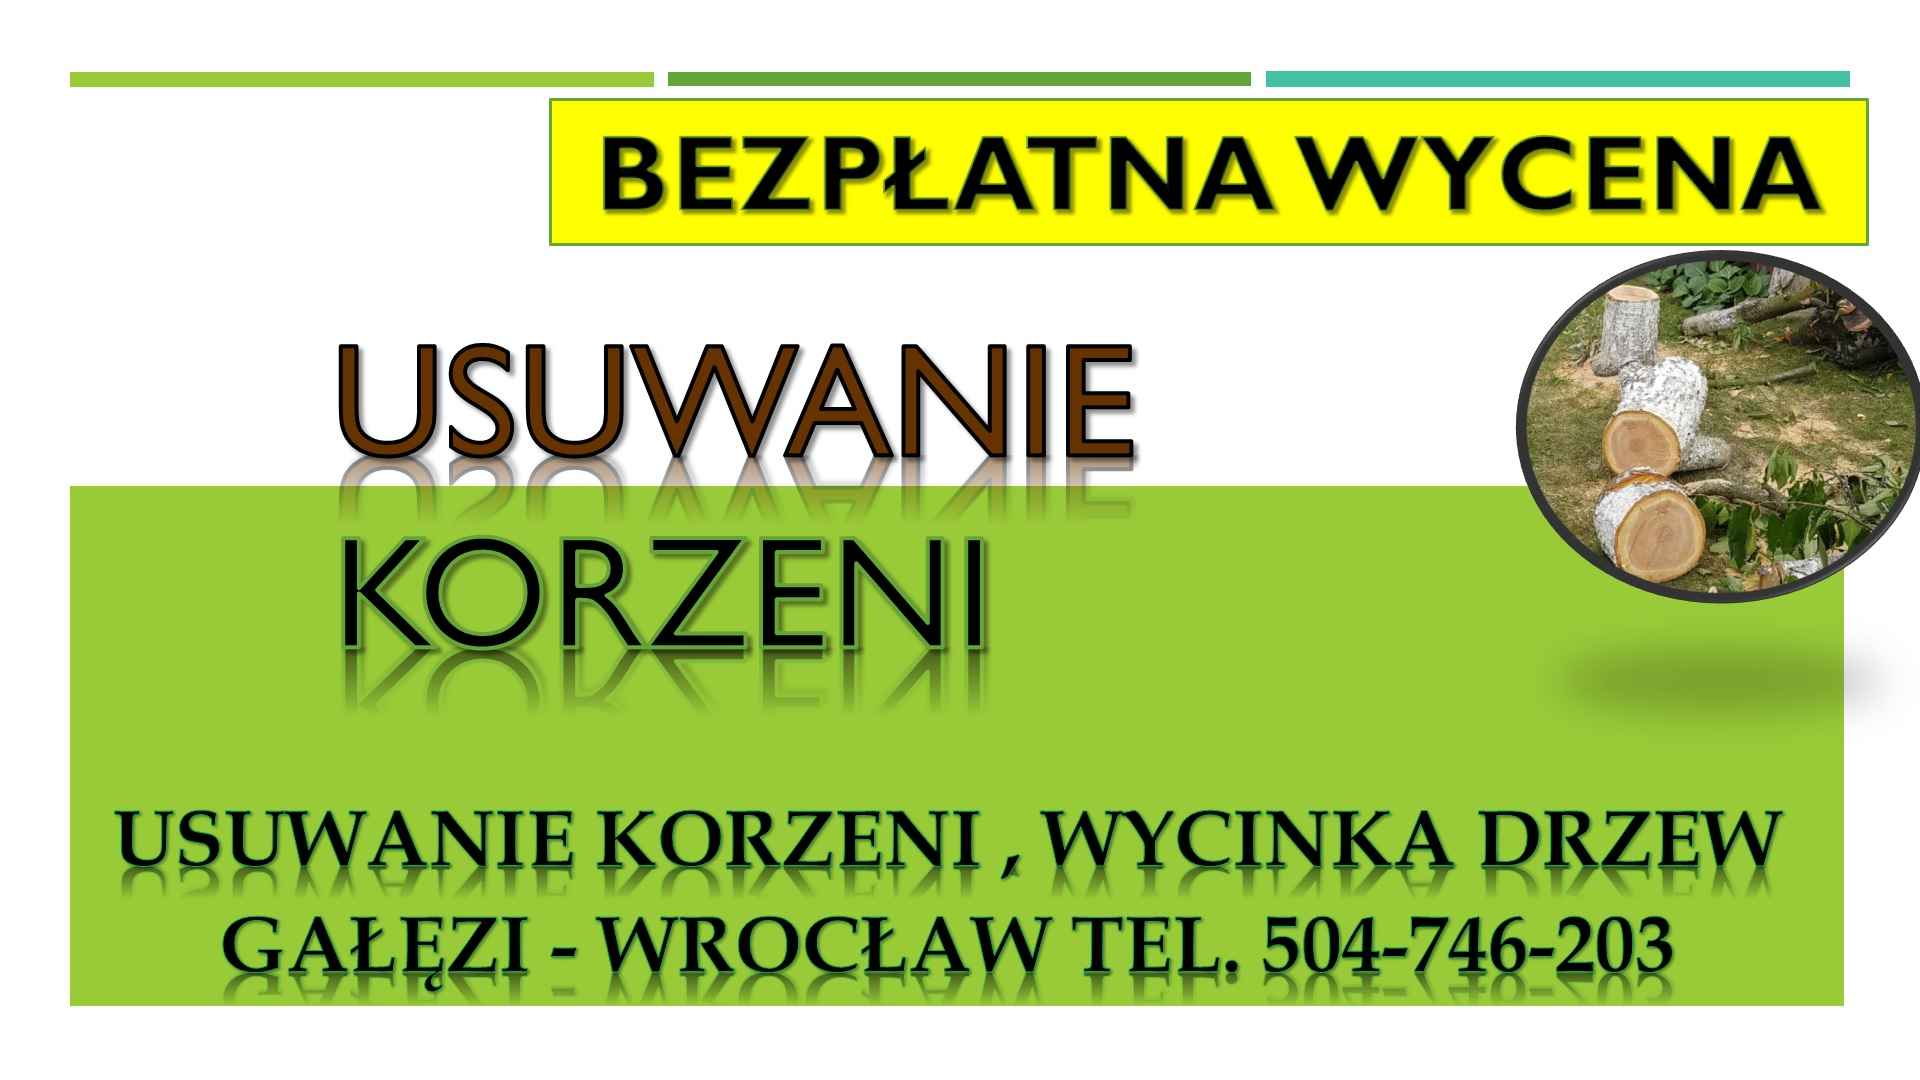 Usuwanie korzeni, cennik , tel. 504-746-203. Wrocław. pni, pnia drzewa Psie Pole - zdjęcie 1